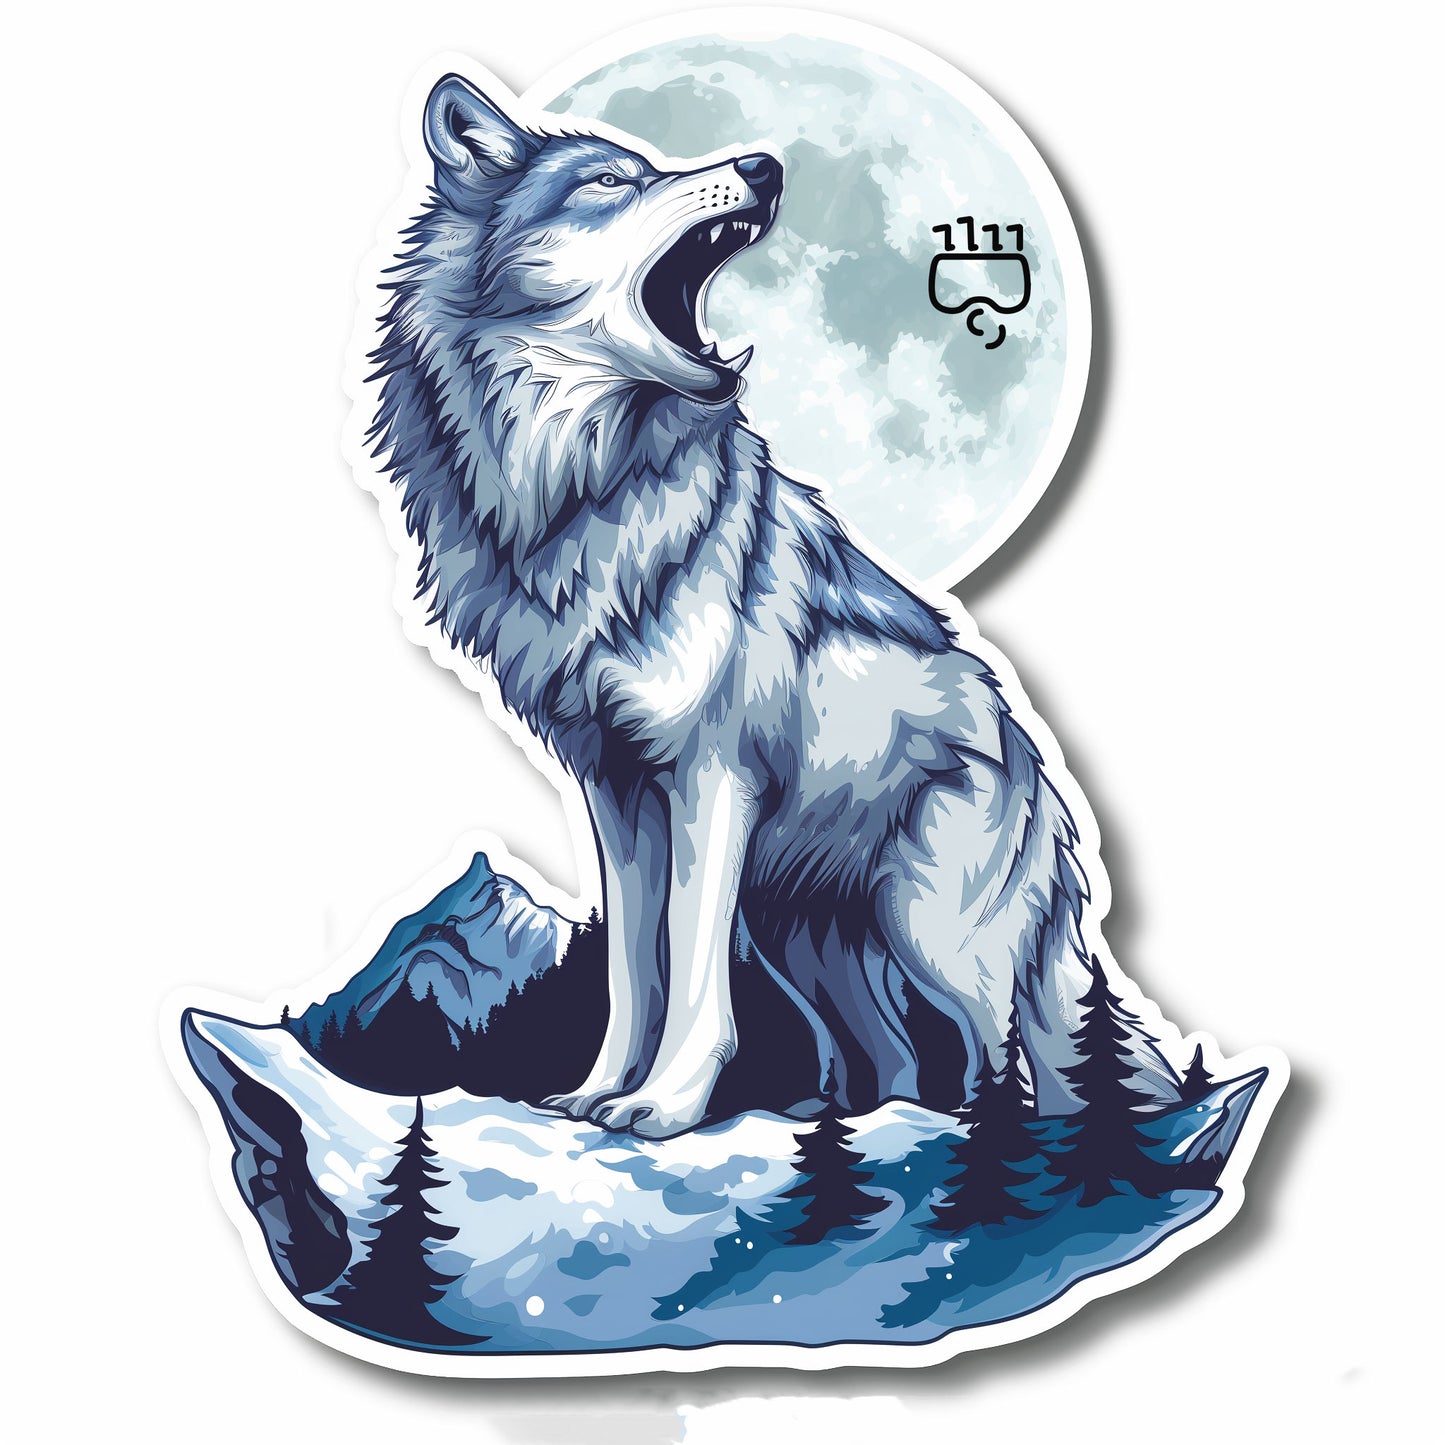 Wolf Moon Sticker